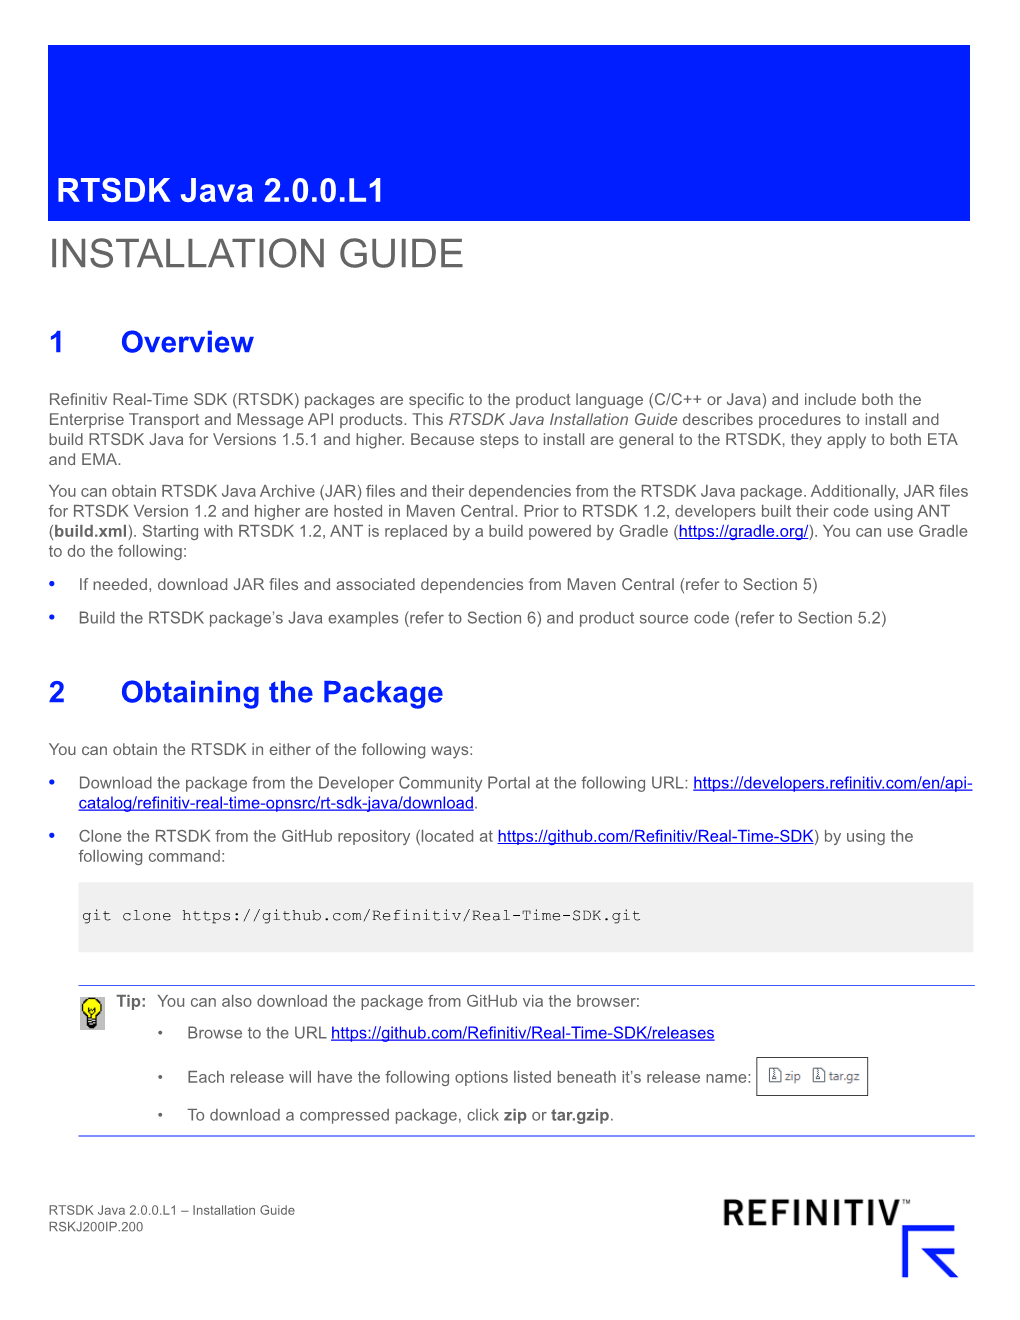 RTSDK Java 2.0.0.L1 INSTALLATION GUIDE